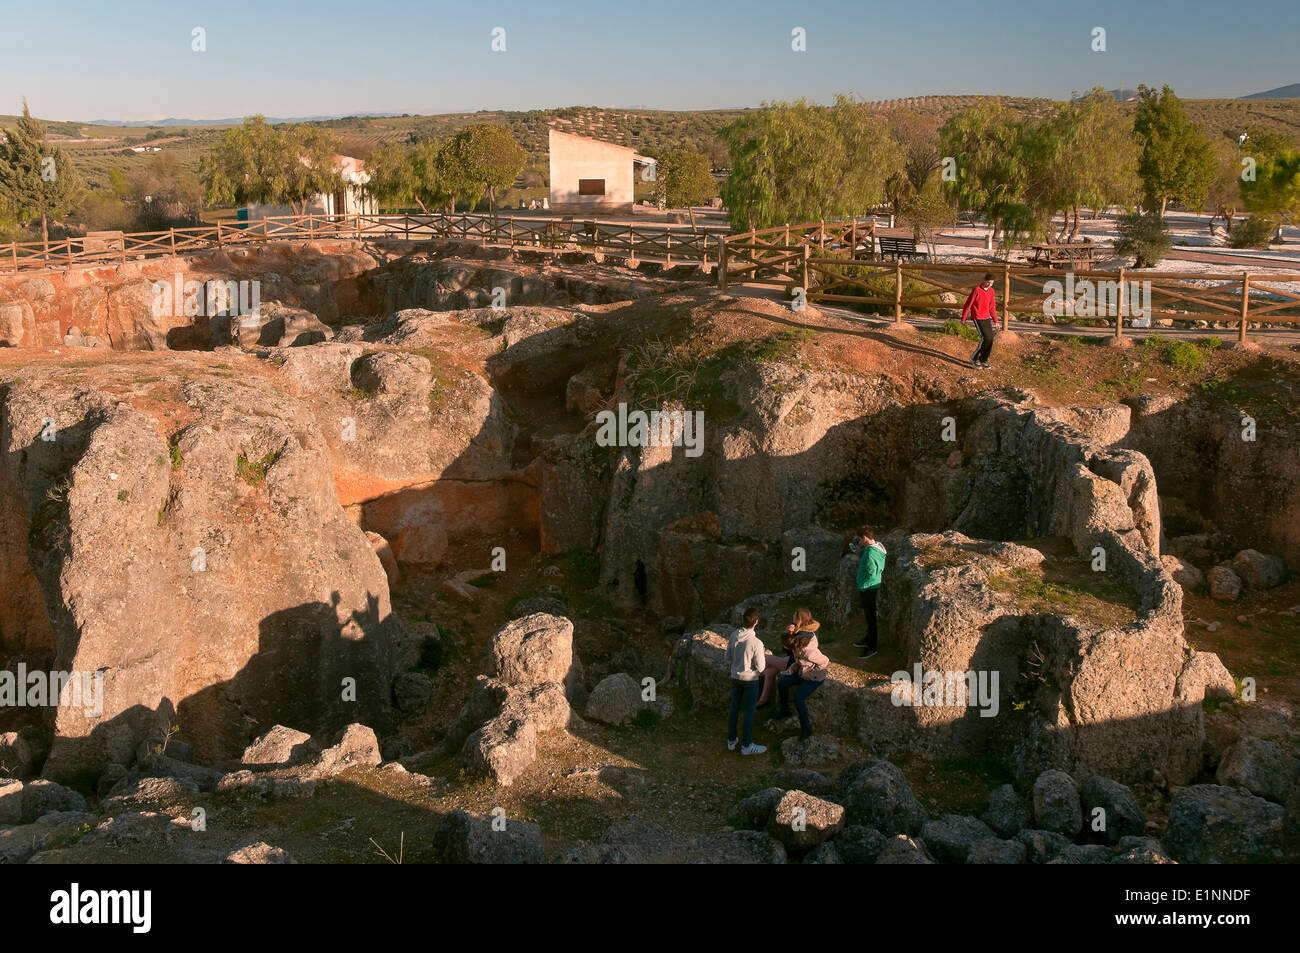 Alte römische Steinbruch in Cerro bellido, der touristischen Route der Banditen, casariche, Provinz Sevilla, Andalusien, Spanien, Europa Stockfoto